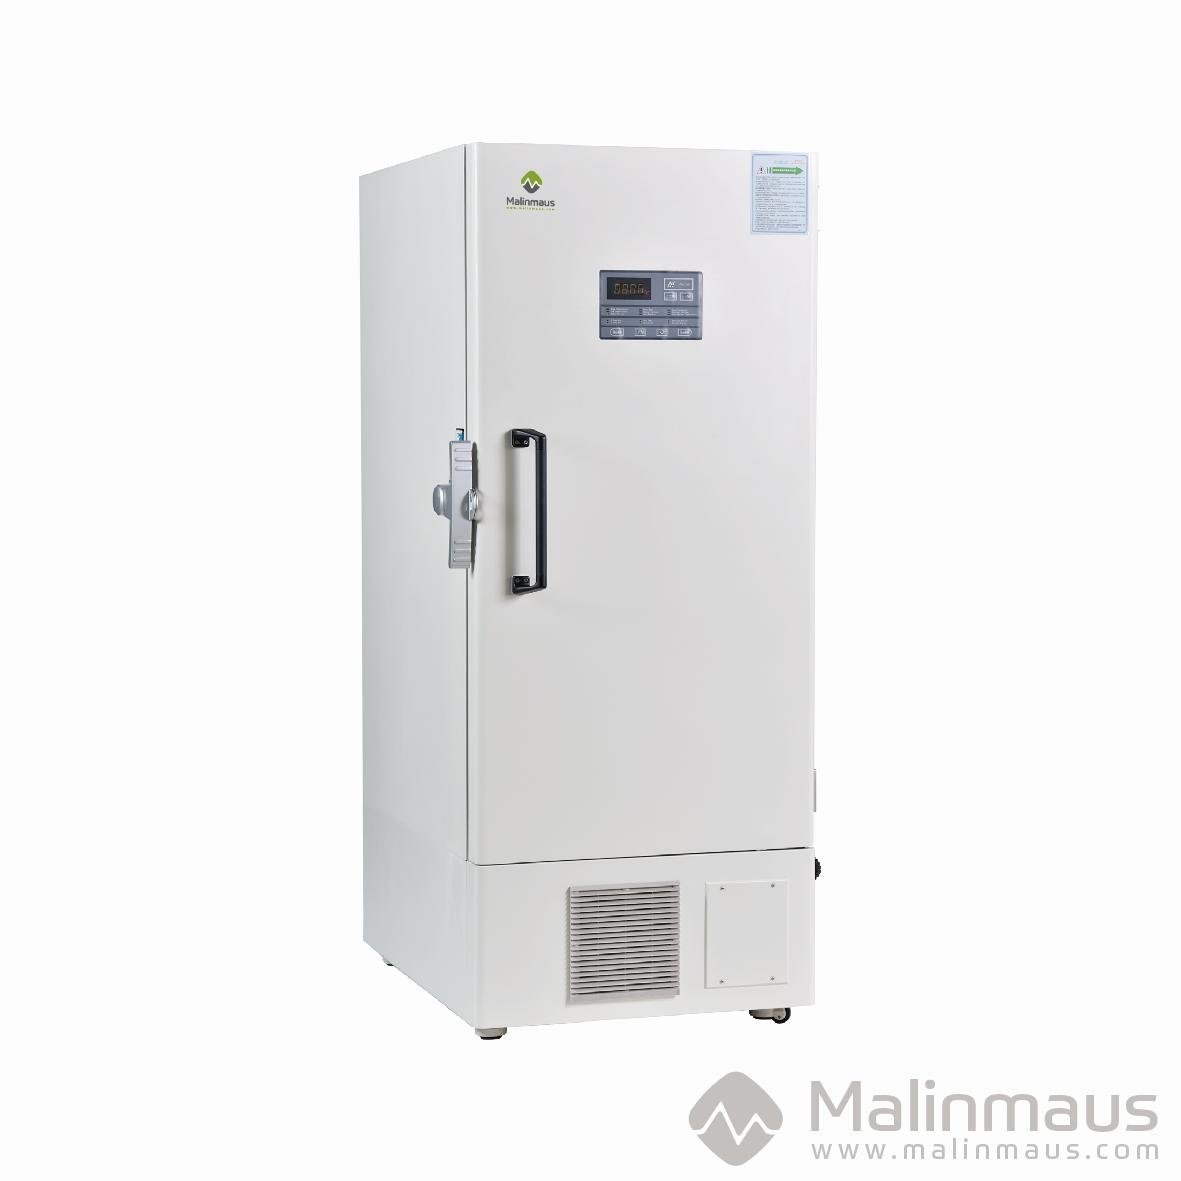 Malinmaus - 86°C ULT Freezer